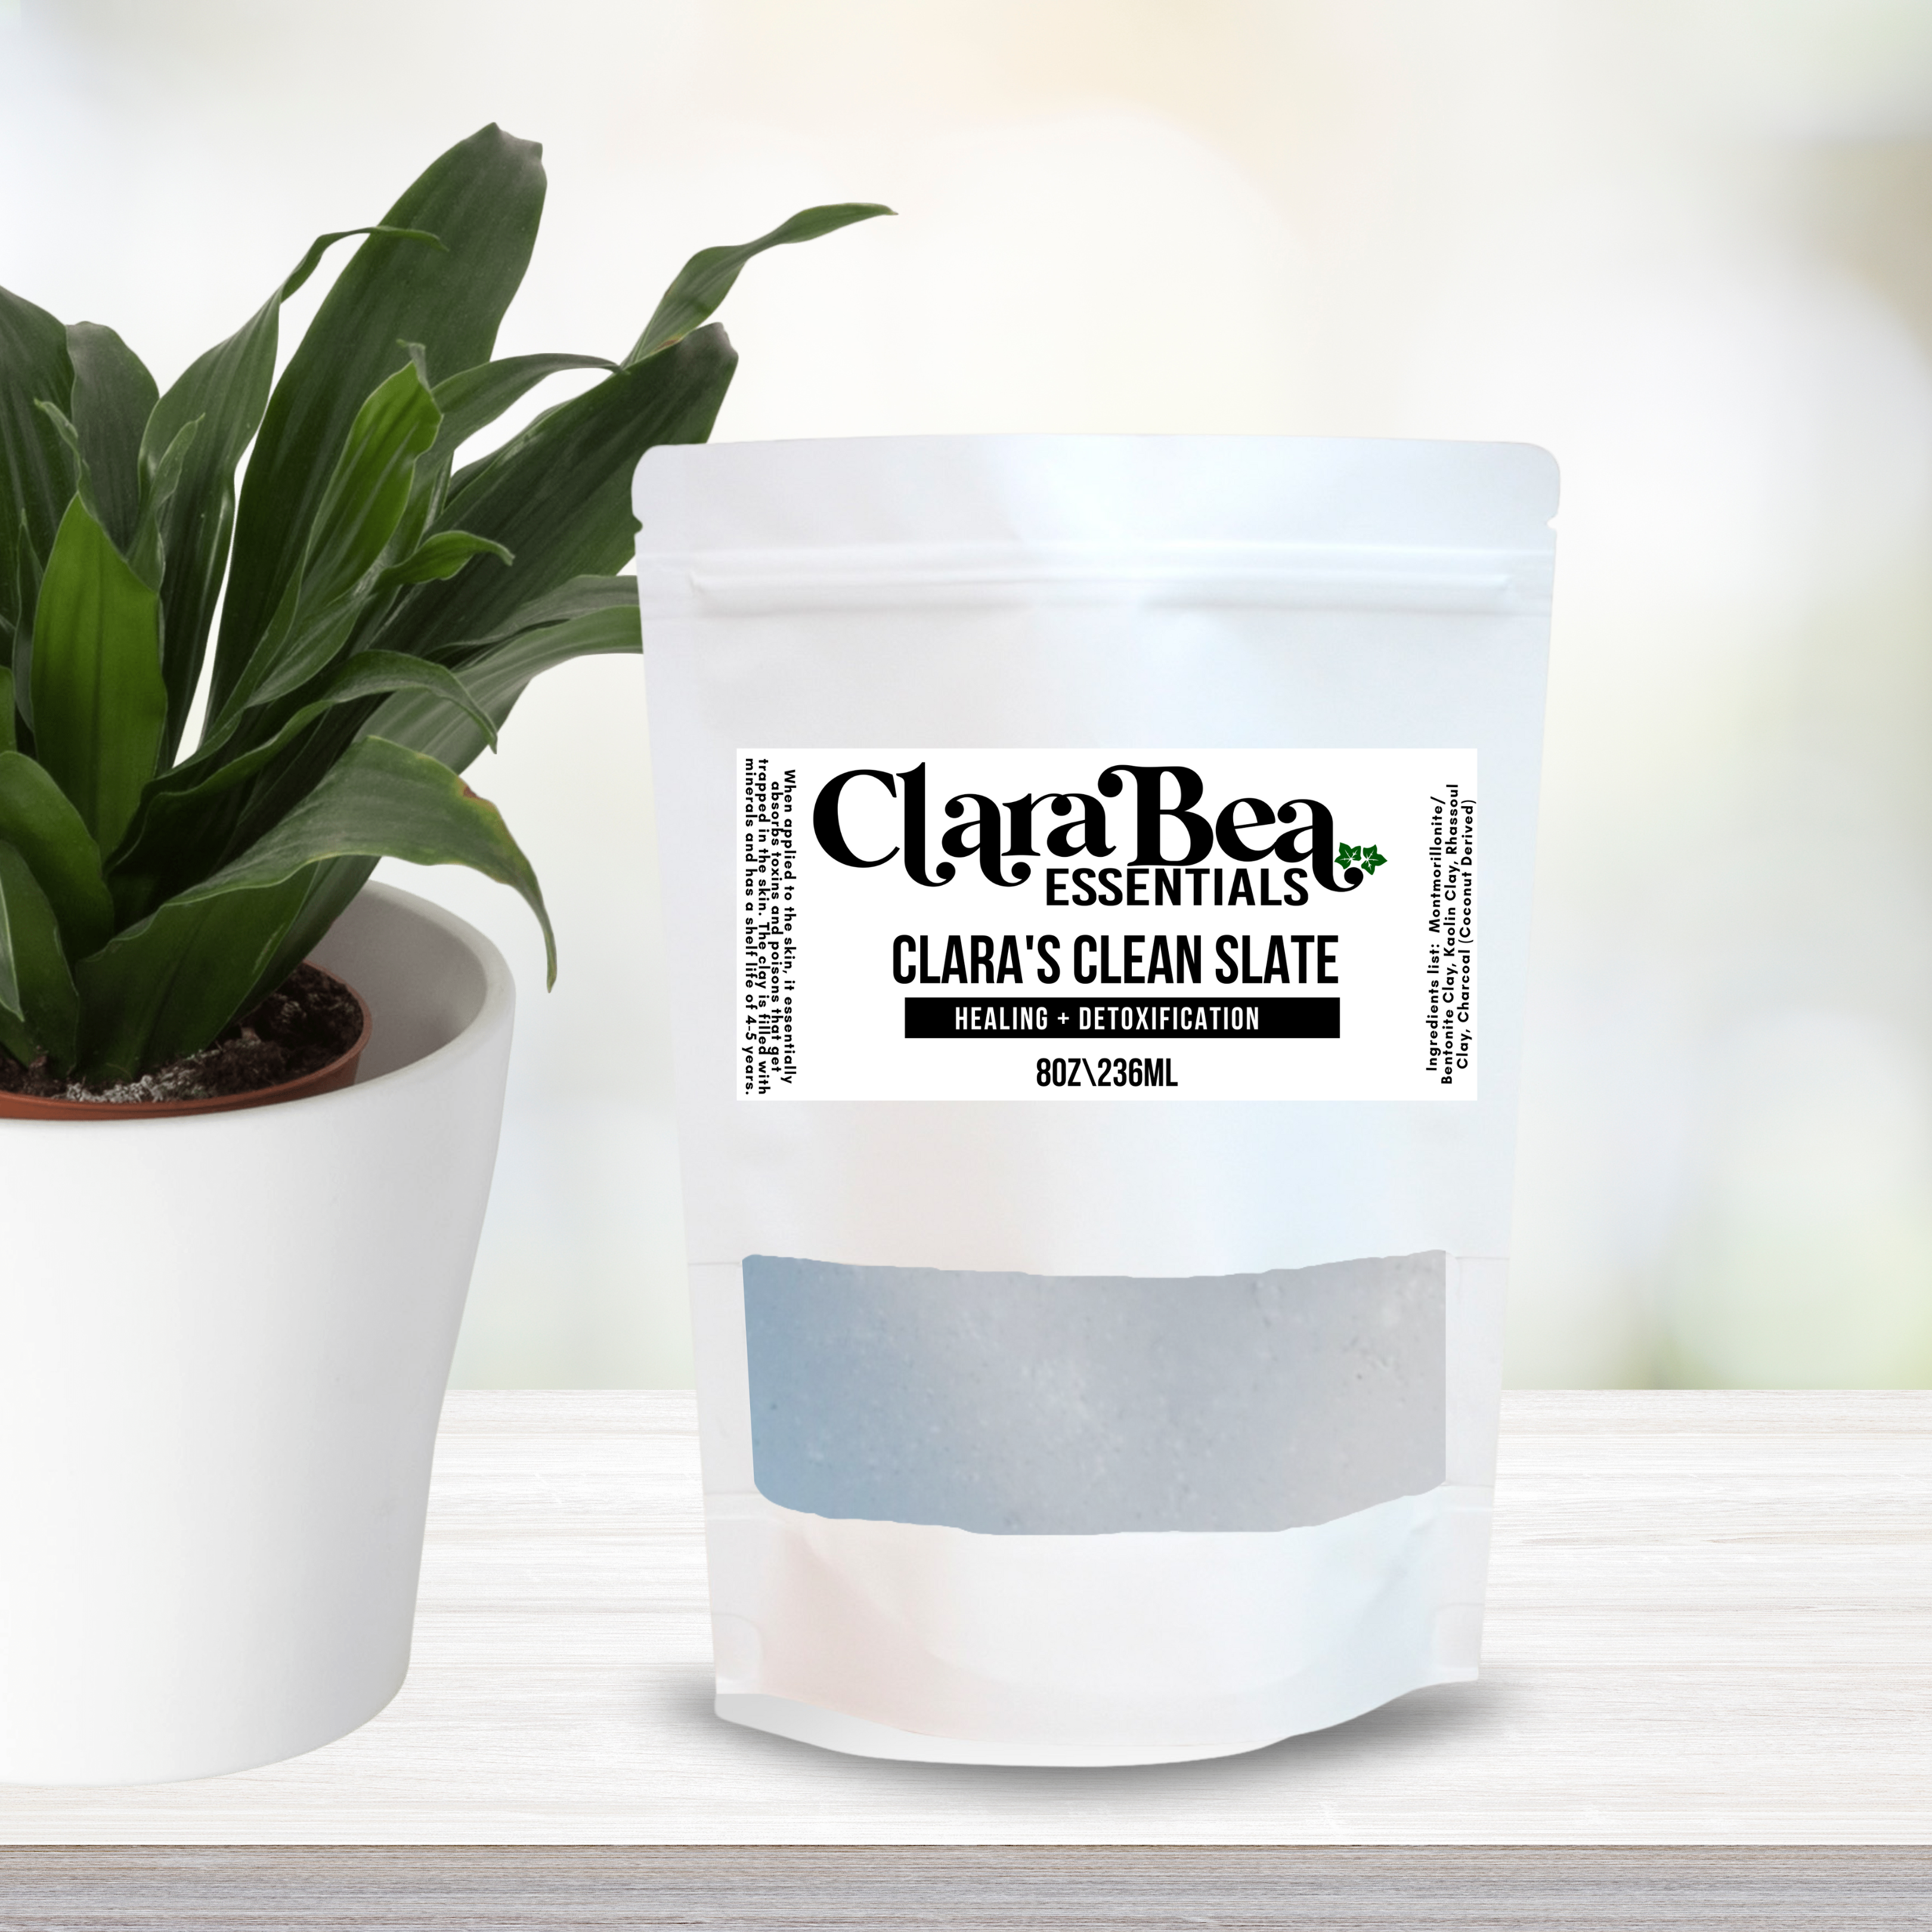 Clara's Clean Slate – Clara Bea Essentials